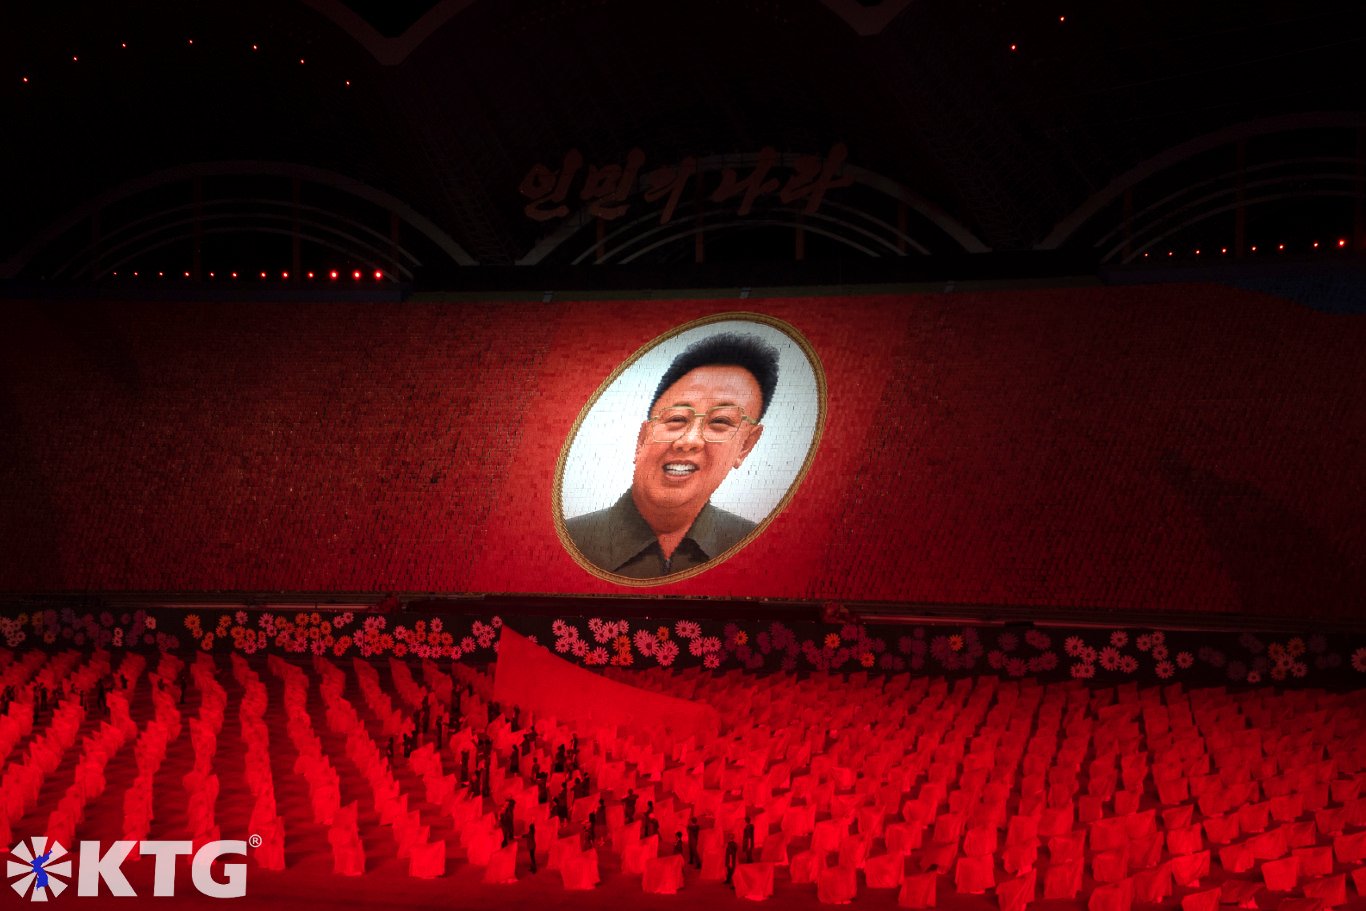 Retrato del Dirigente Kim Jong Il en los Juegos Masivos en Pyongyang, Corea del Norte (RPDC). Esto es en el Estadio Rungrado May Day en Pyongyang. Foto tomada por KTG Tours